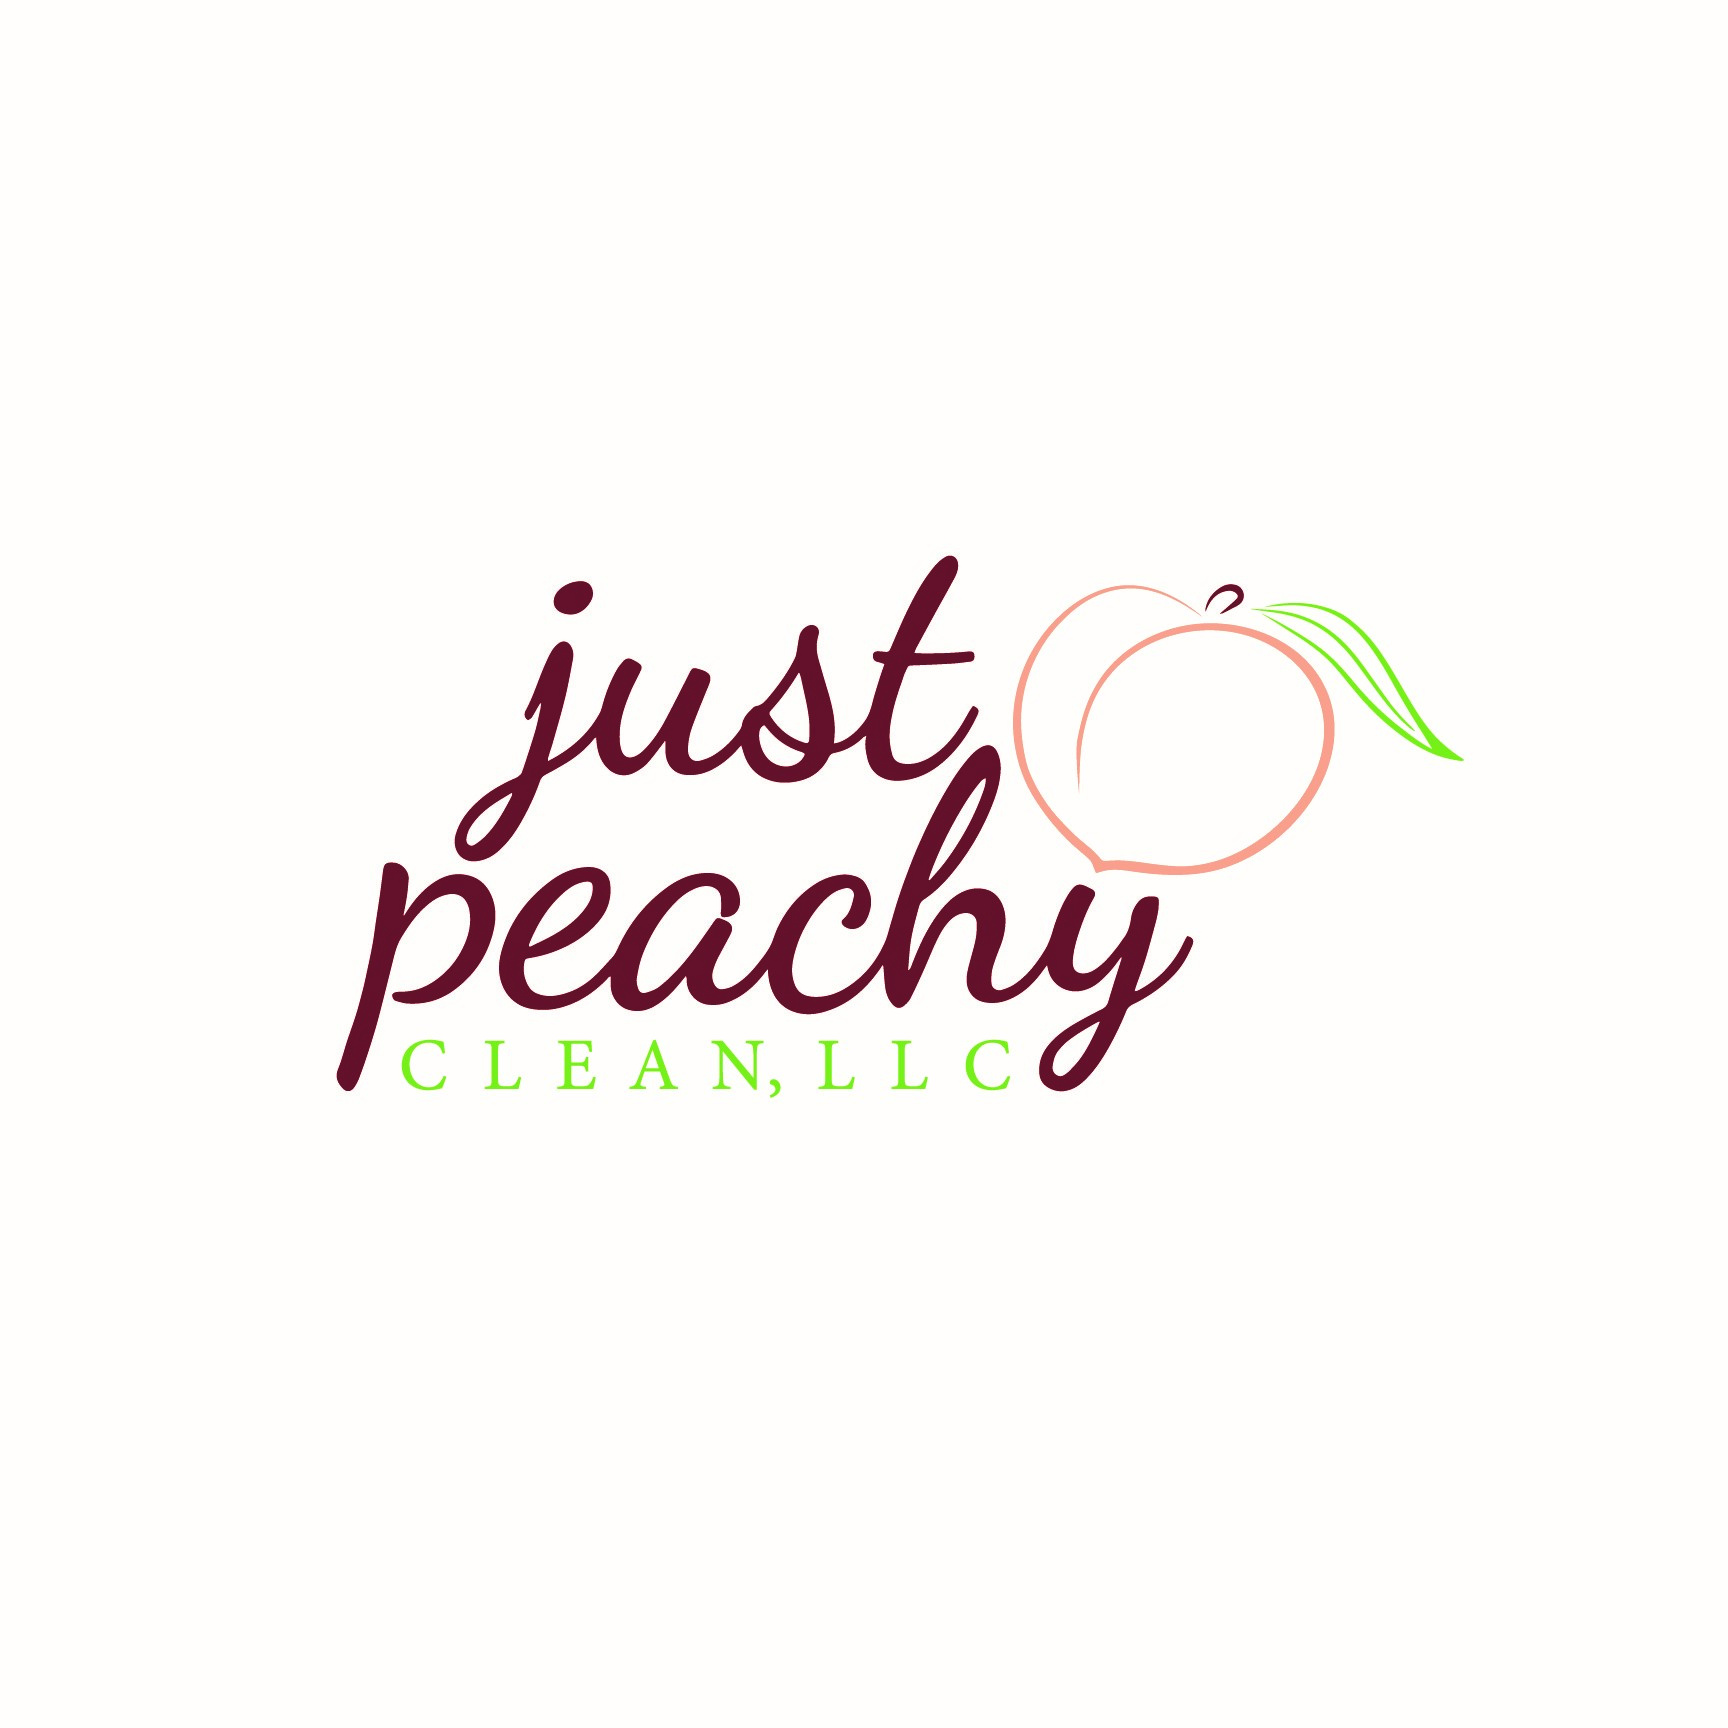 Just Peachy Clean, LLC